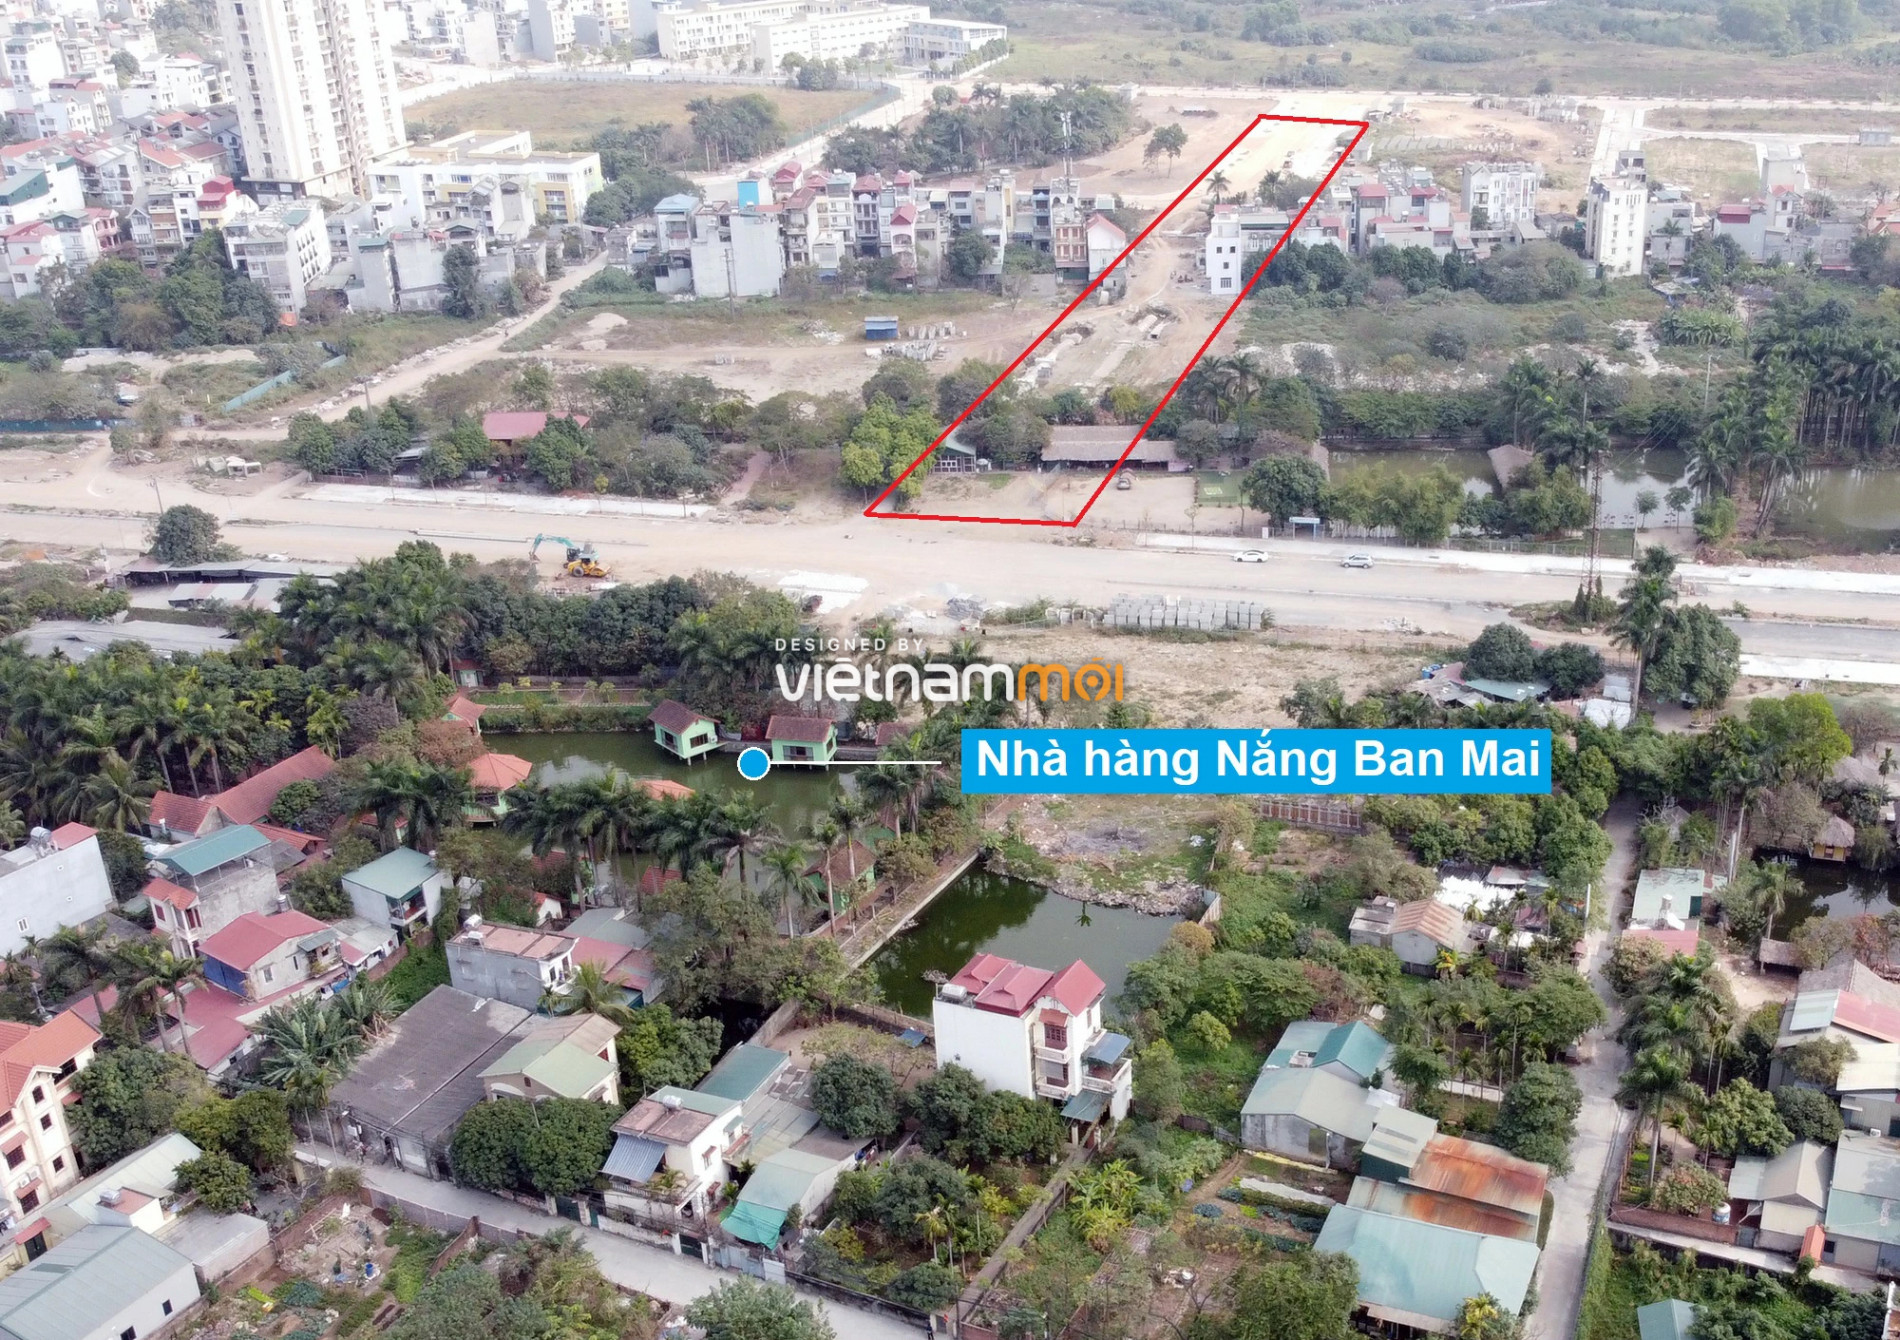 Những khu đất sắp thu hồi để mở đường ở phường Ngọc Thụy, Long Biên, Hà Nội (phần 6) - Ảnh 10.